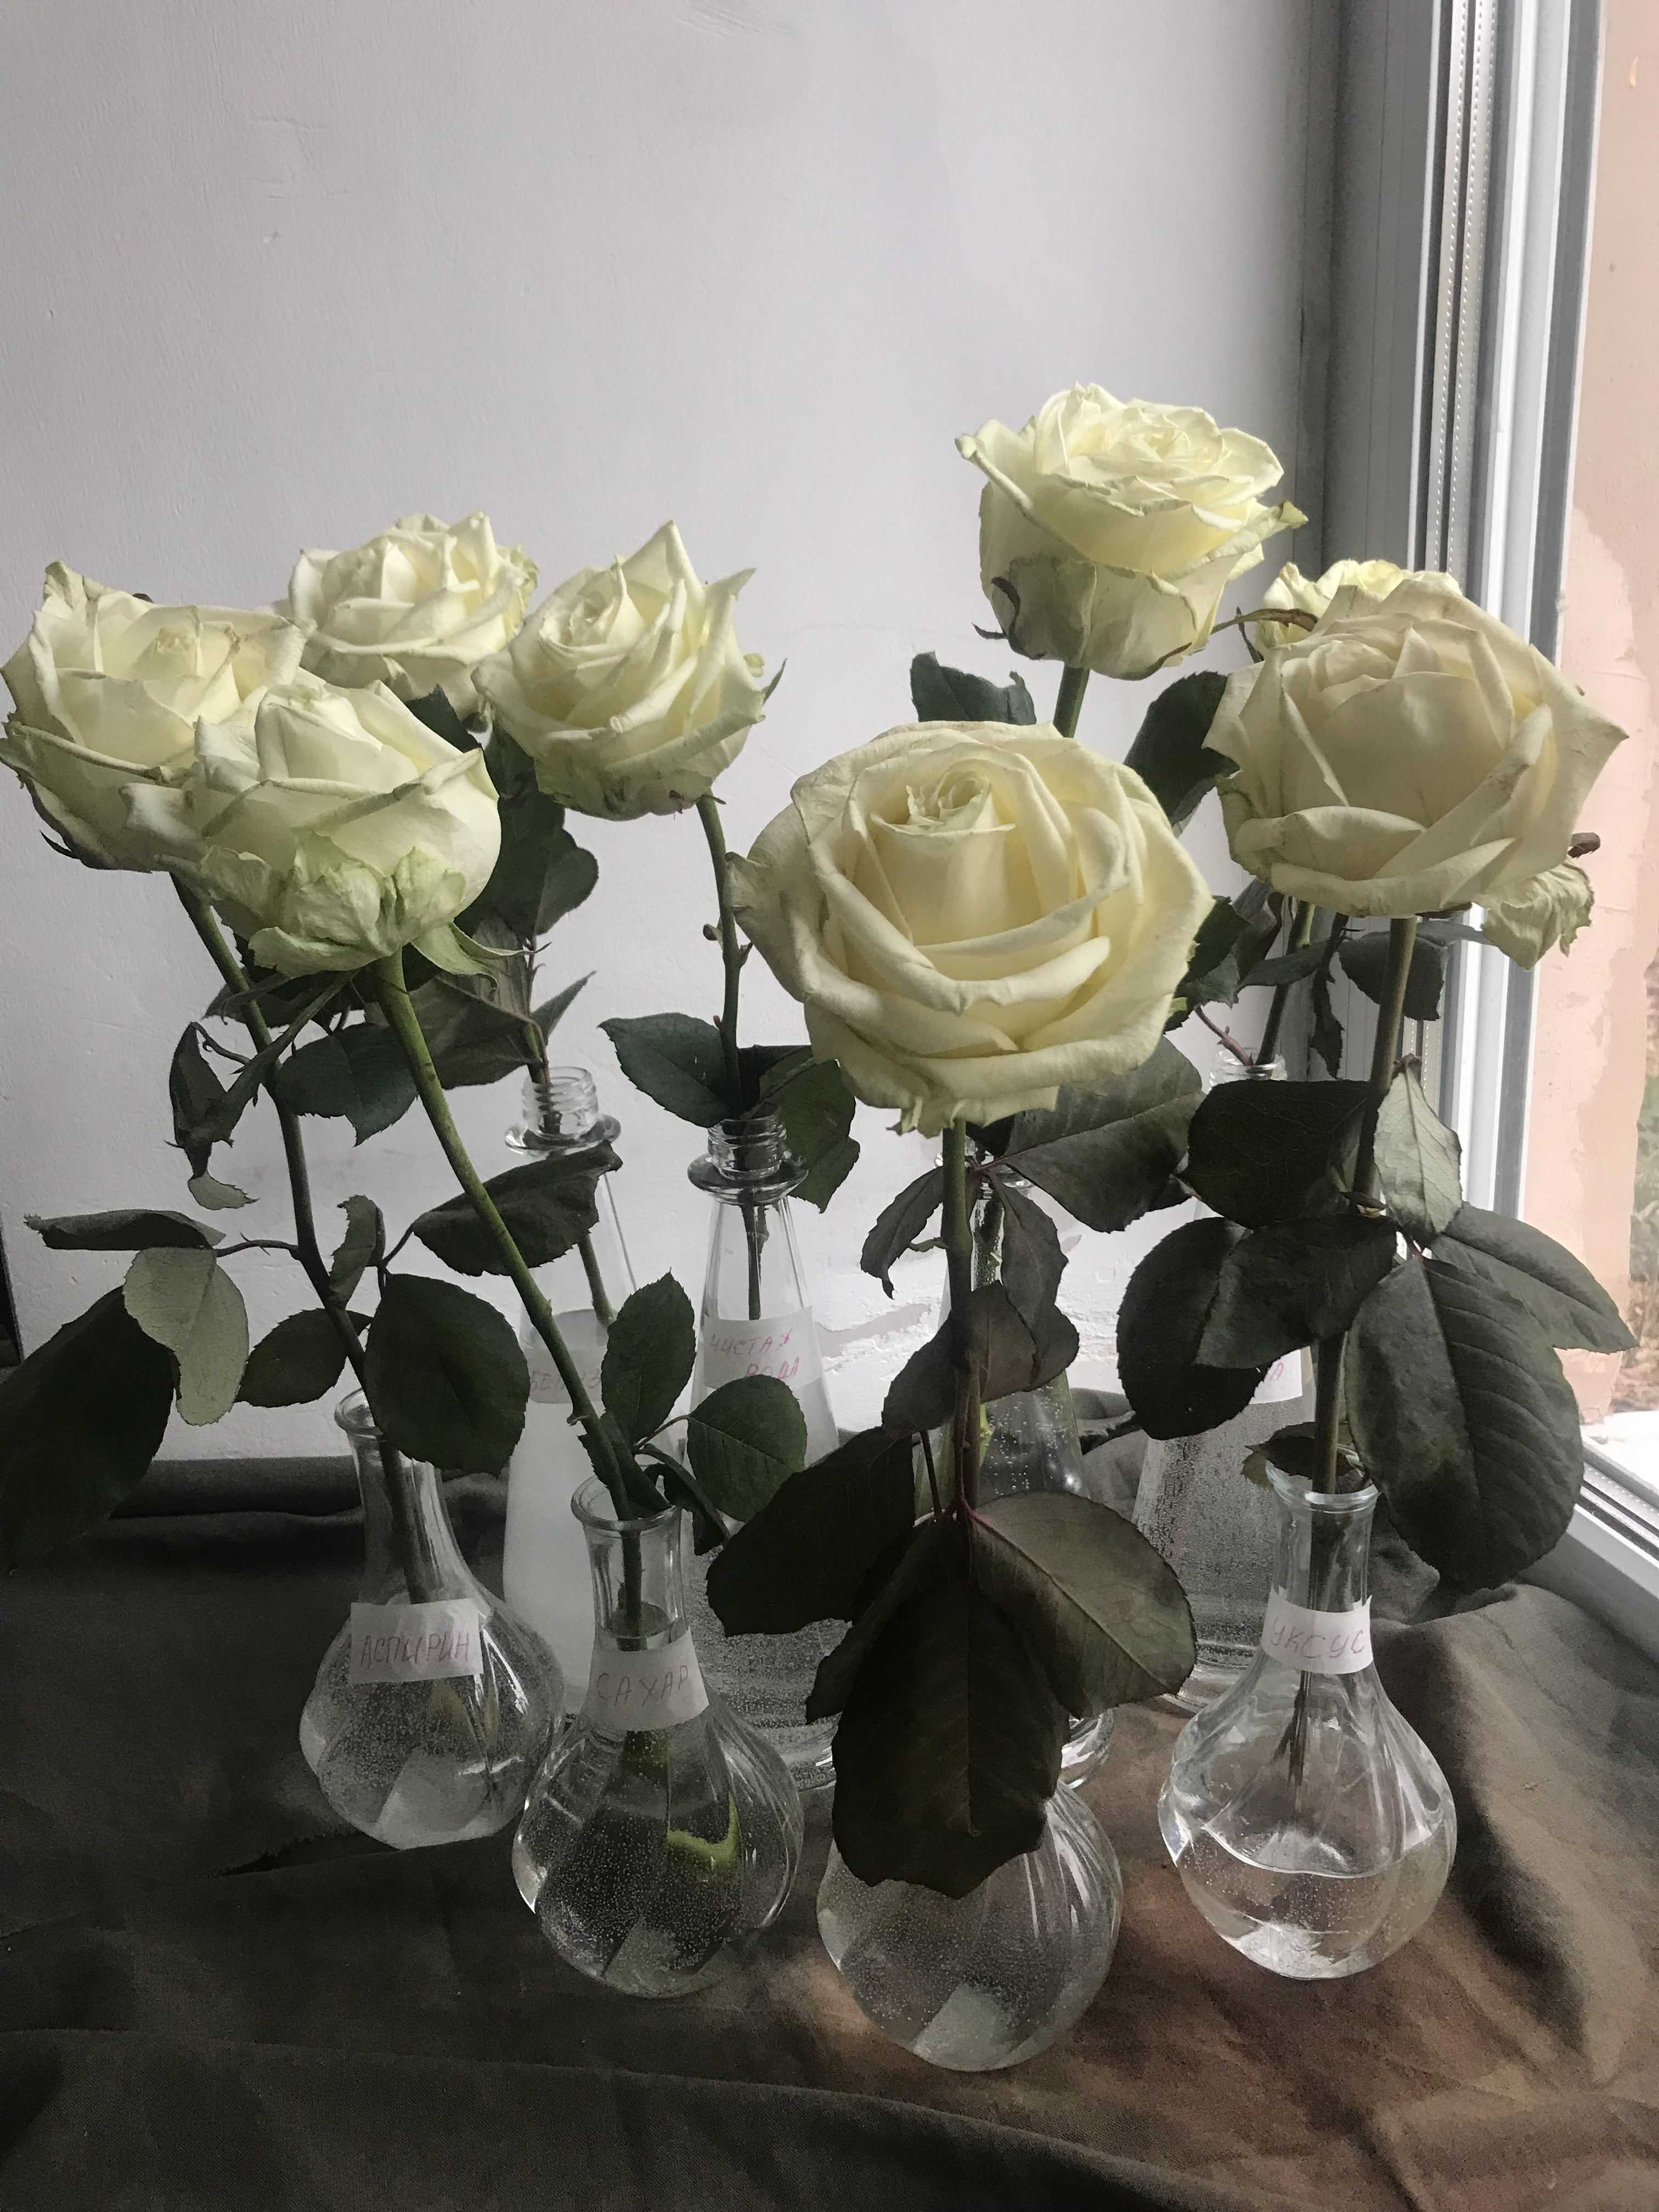 Как сохранить срезанные розы в вазе дольше всего: правила ухода за срезанными цветами